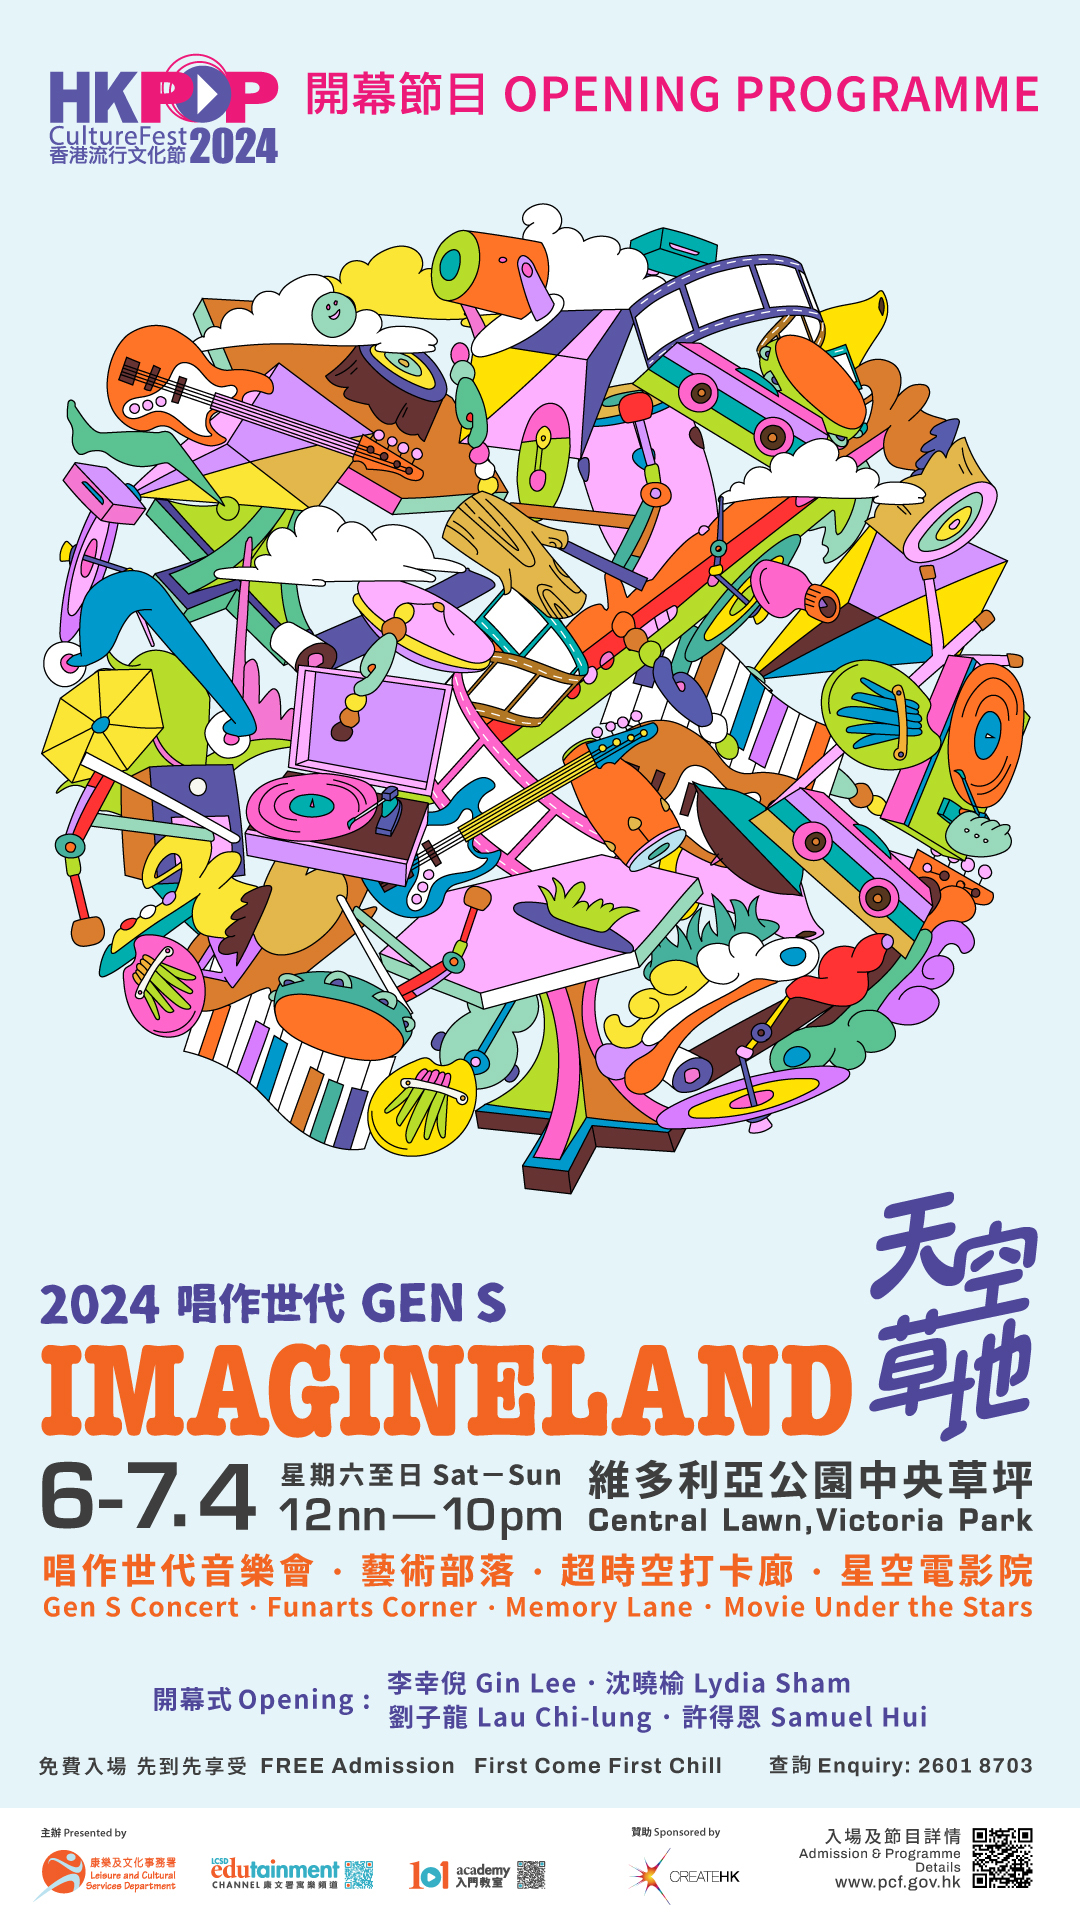 香港流行文化節2024 - 4月6至7日開幕節目《天空草地》免費入場；其他節目舉行至2025年2月